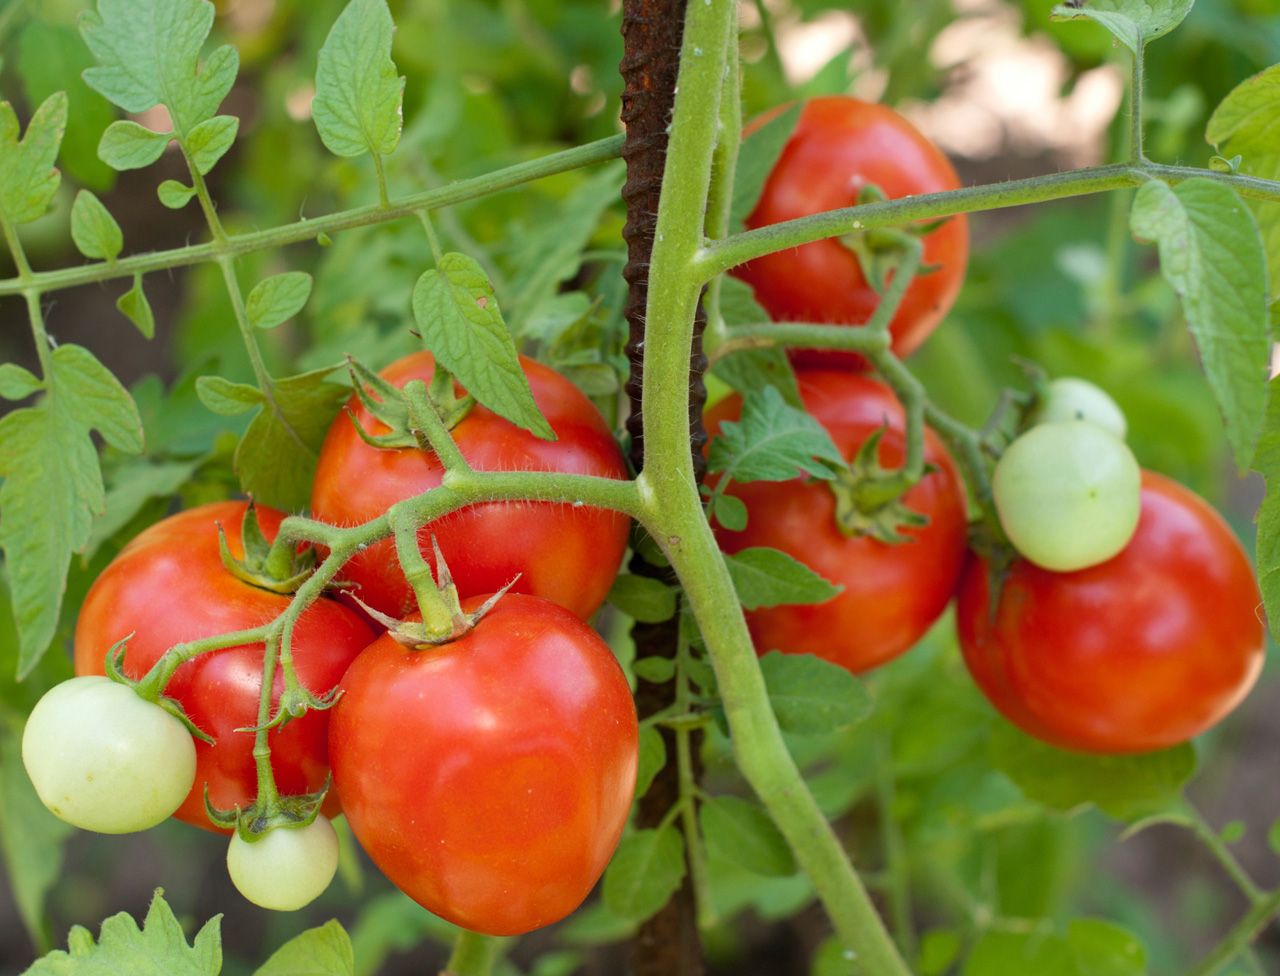 Dit is DE JUISTE MANIER om tomaten te planten (en planten van 2 meter hoog te hebben).